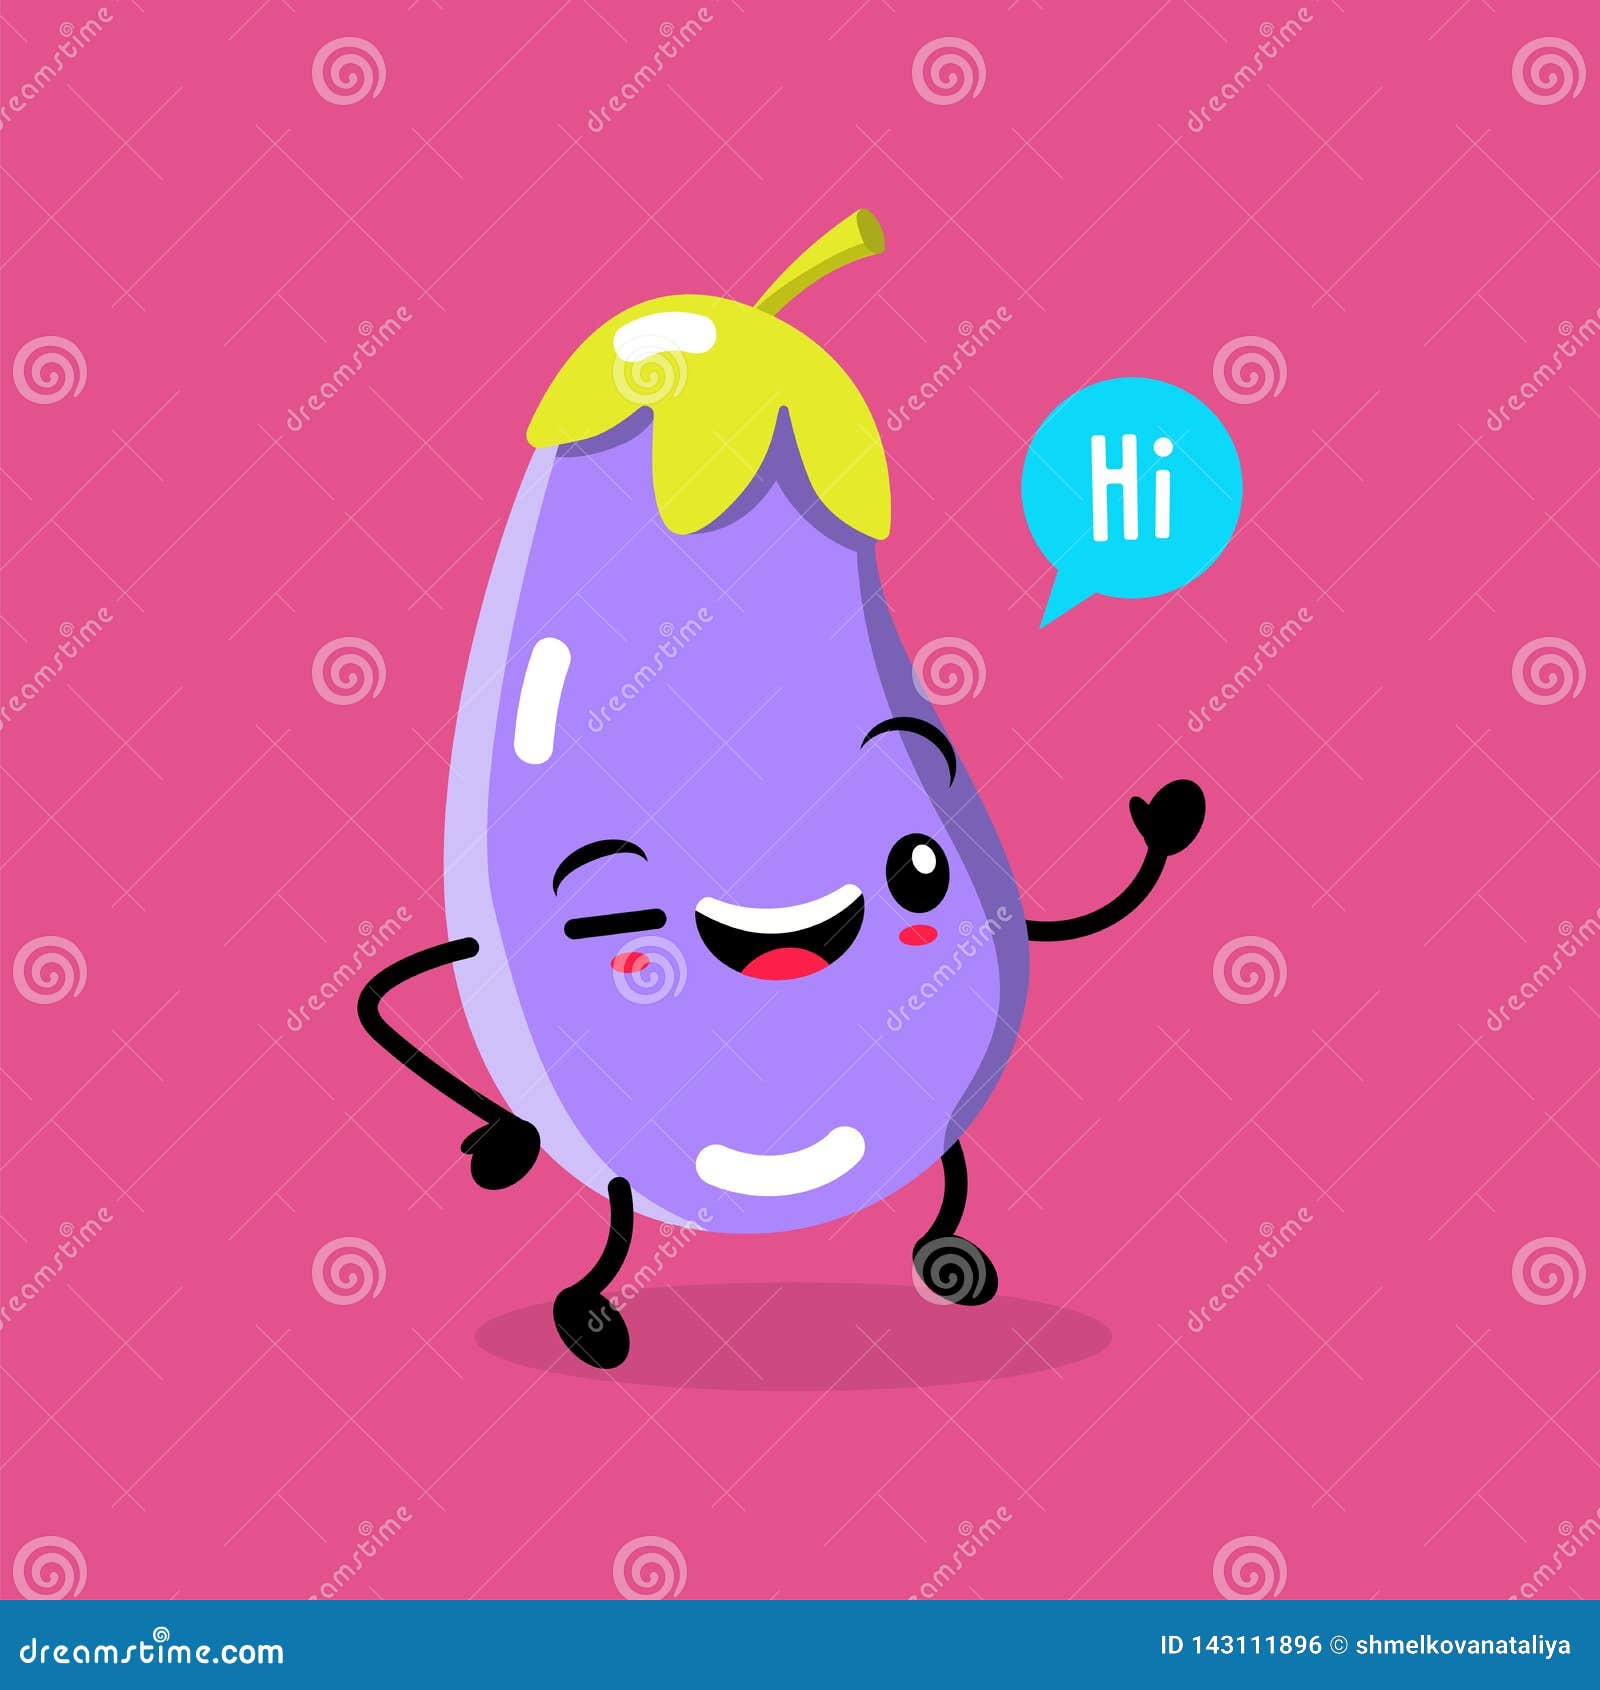 Kawaii Food Vector Cartoon Eggplant Happy Funny Asian